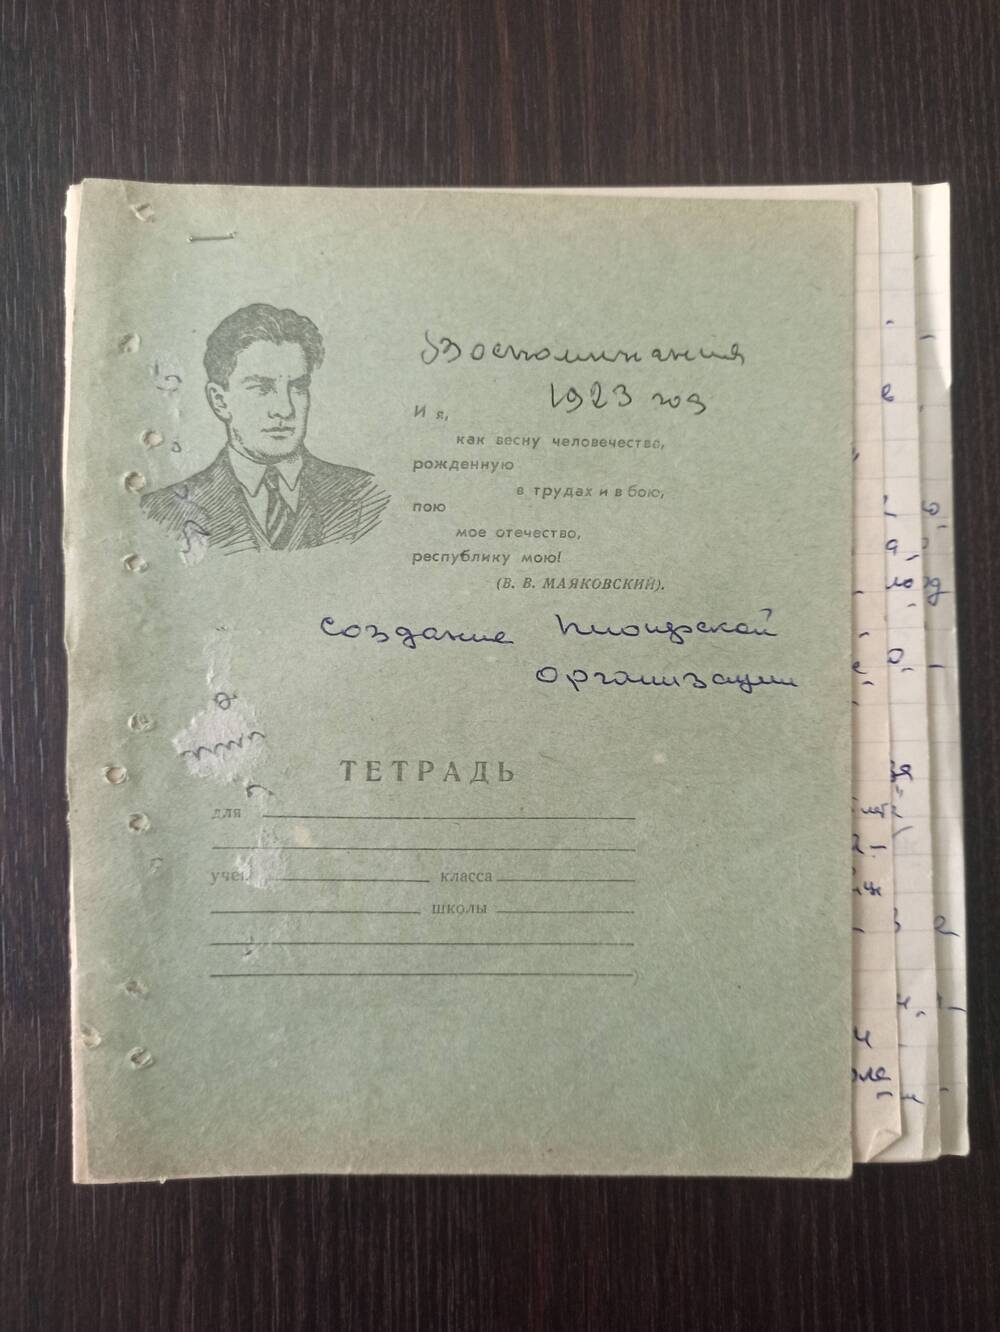 Документ. Воспоминания Журбенко Е.С. «Создание пионерской организации» от 20.02.1963г.